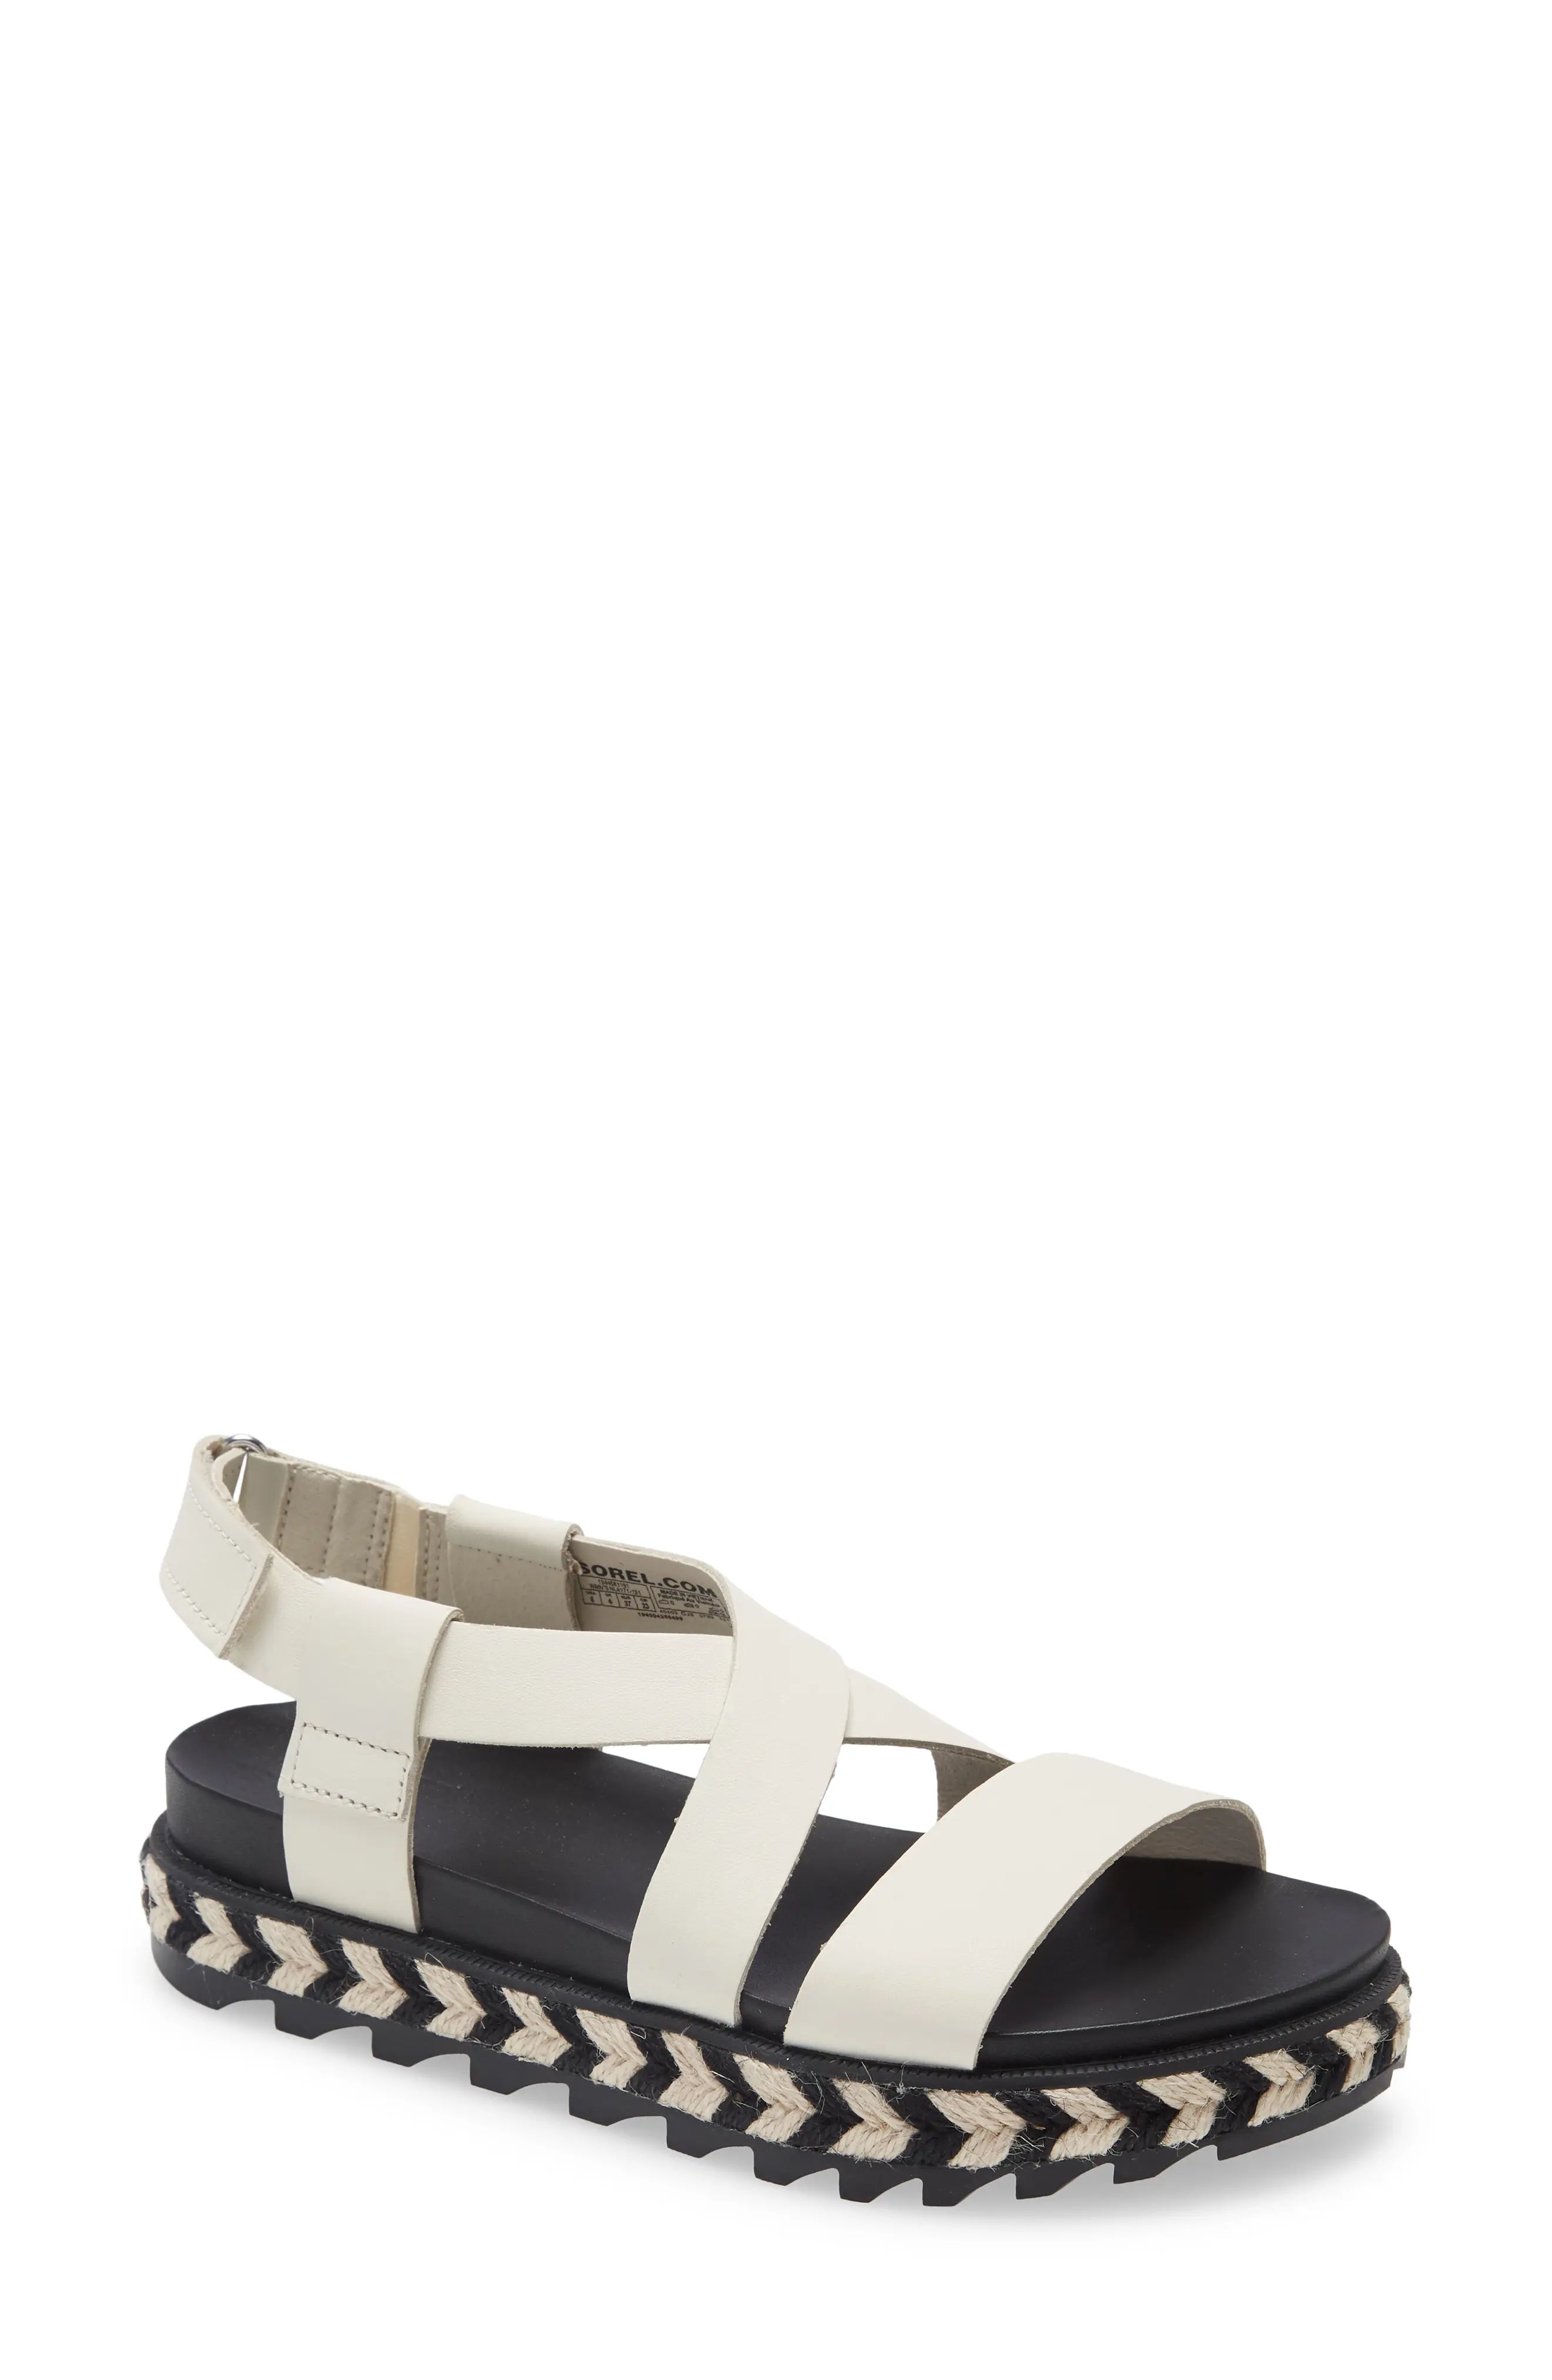 Women's Sorel Roaming Crisscross Sandal, Size 6 M - White | Nordstrom